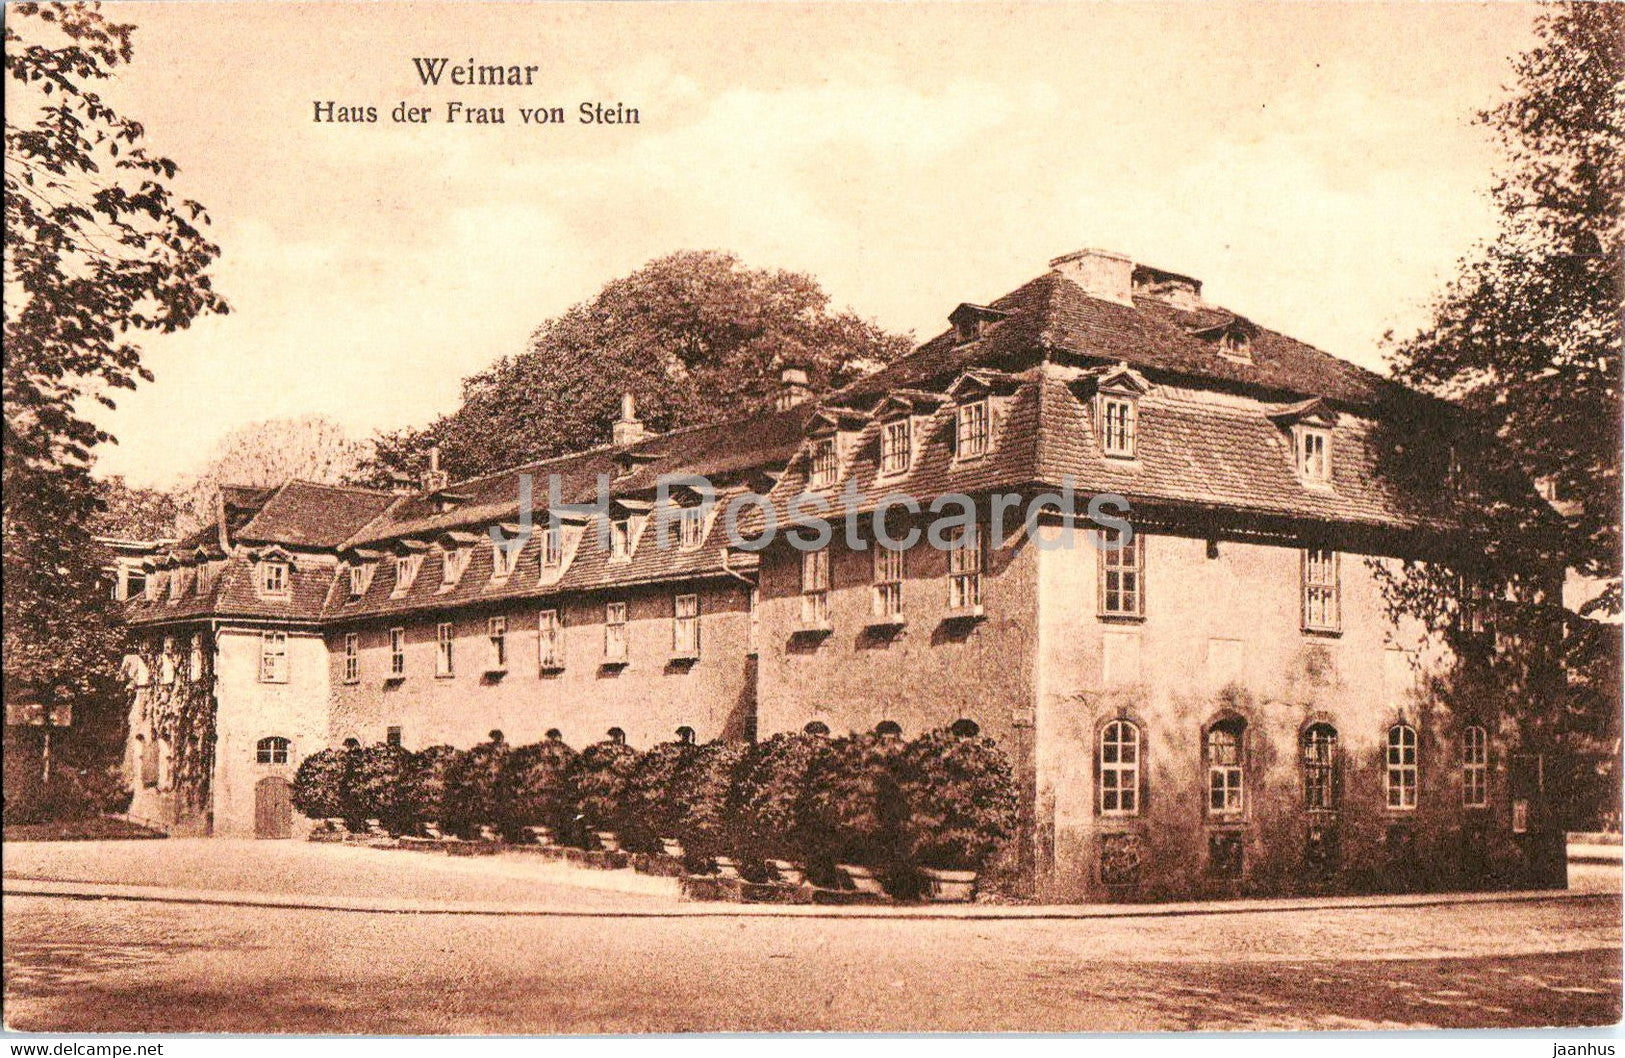 Weimar - Haus der Frau von Stein - old postcard - Germany - unused - JH Postcards